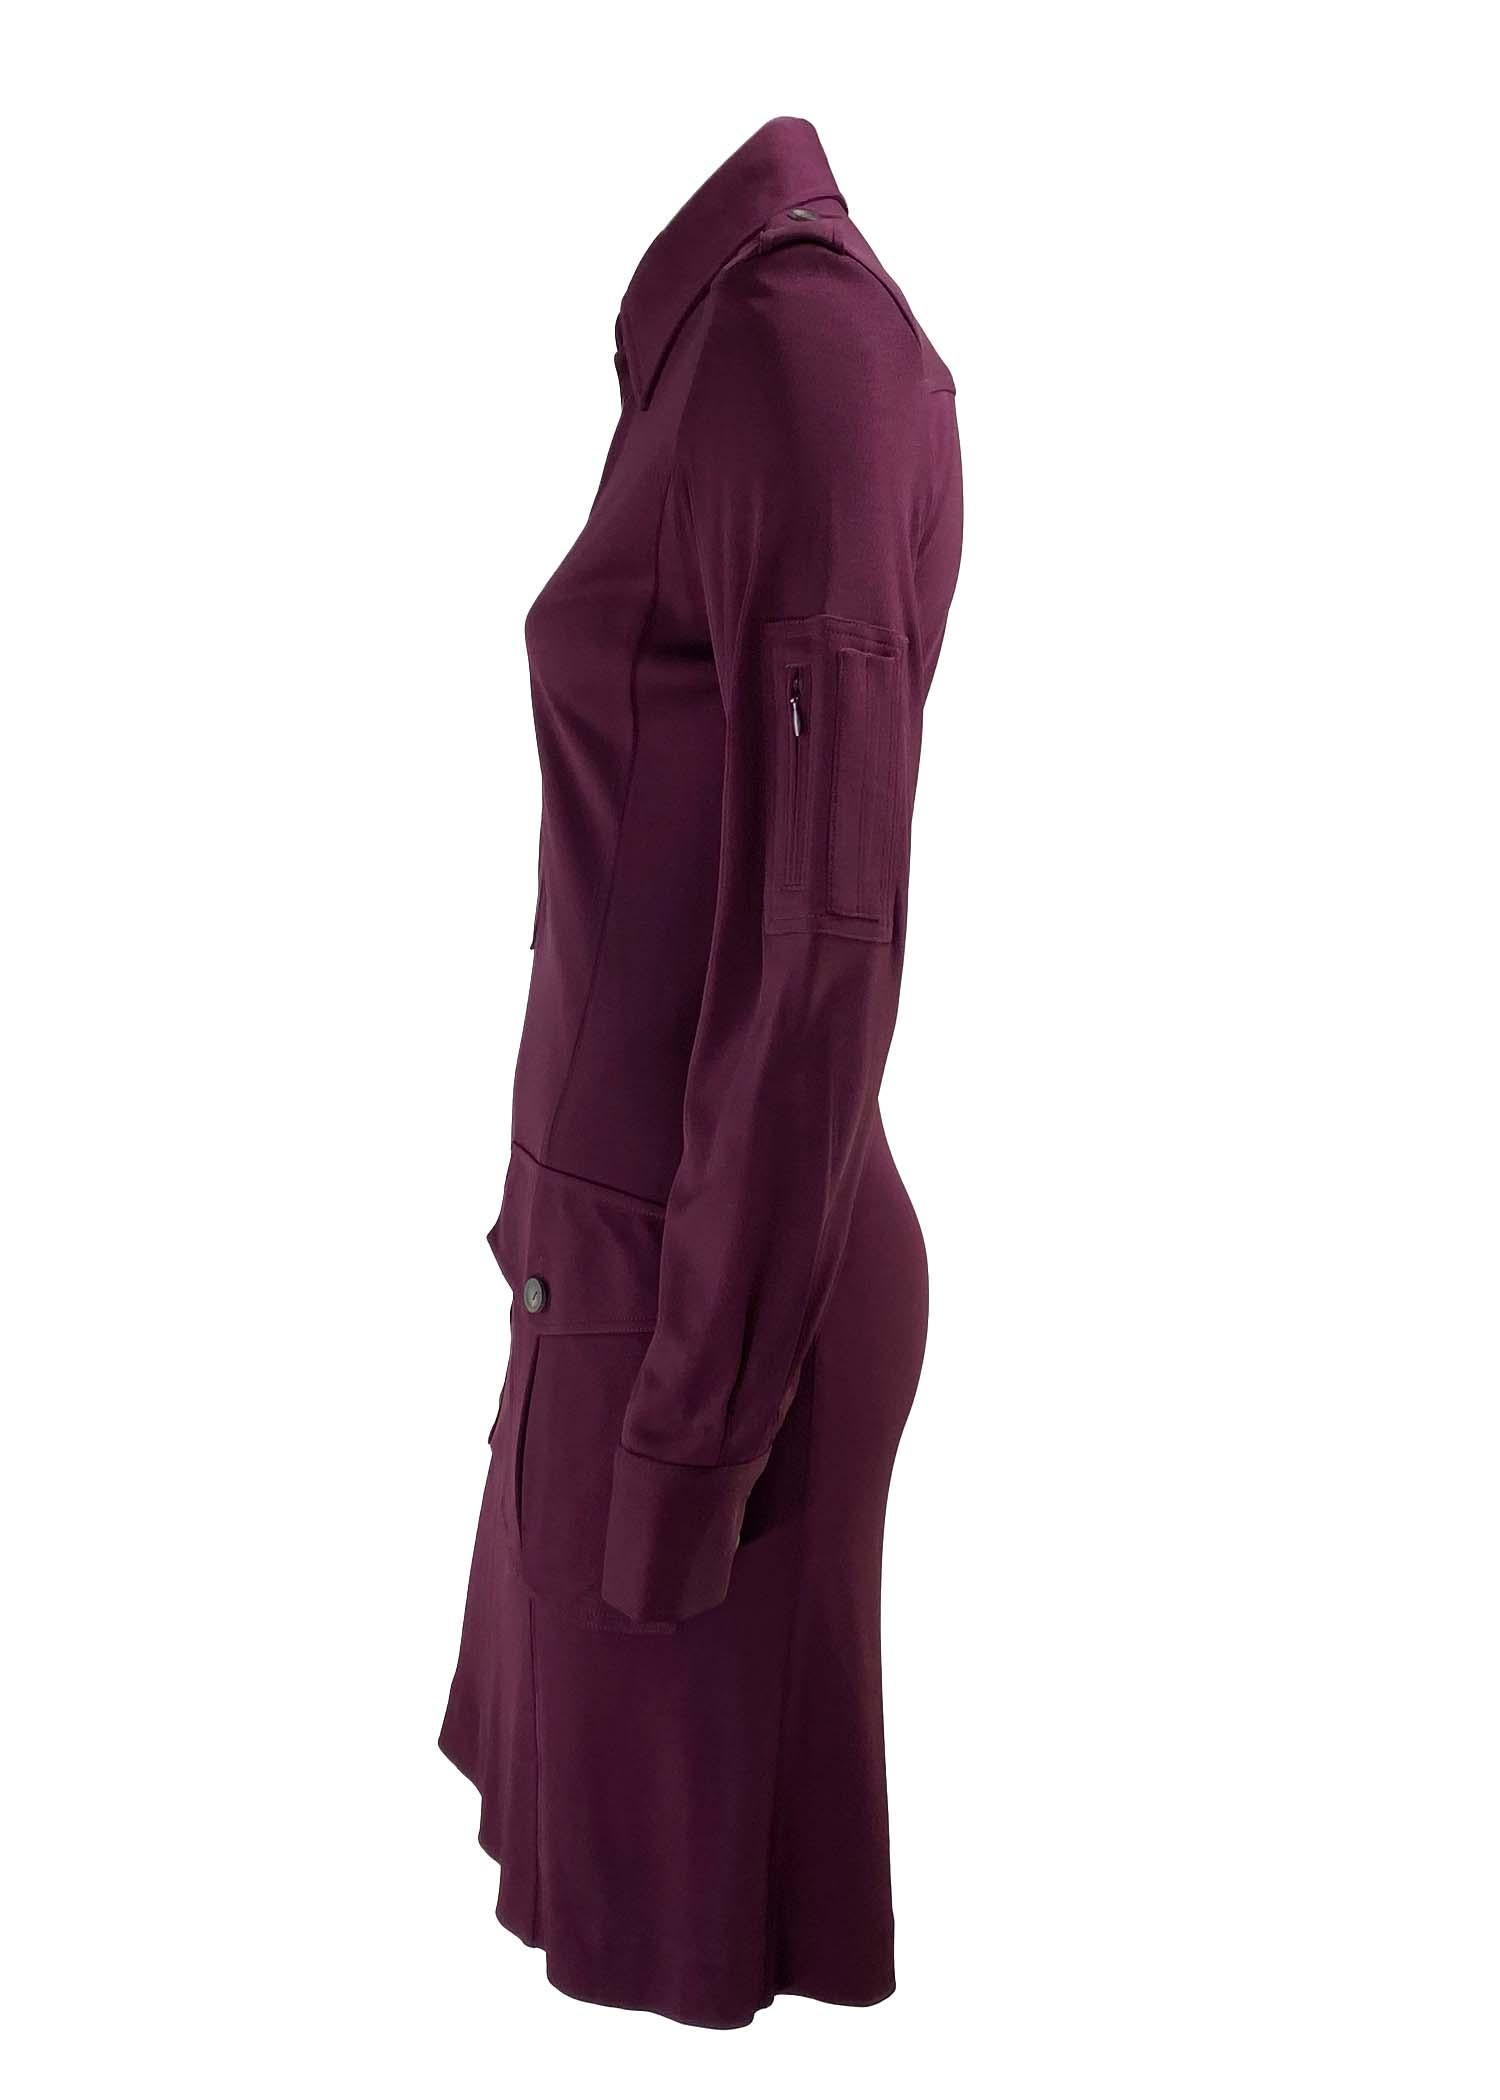 Wir präsentieren ein militärisch inspiriertes Gucci Kleid mit Kragen, entworfen von Tom Ford. Dieses Kleid aus der Herbst/Winter-Kollektion 1996 ist aus einer dehnbaren, kräftigen Viskose gefertigt, die den Stoff perfekt auf die Kurven des Körpers